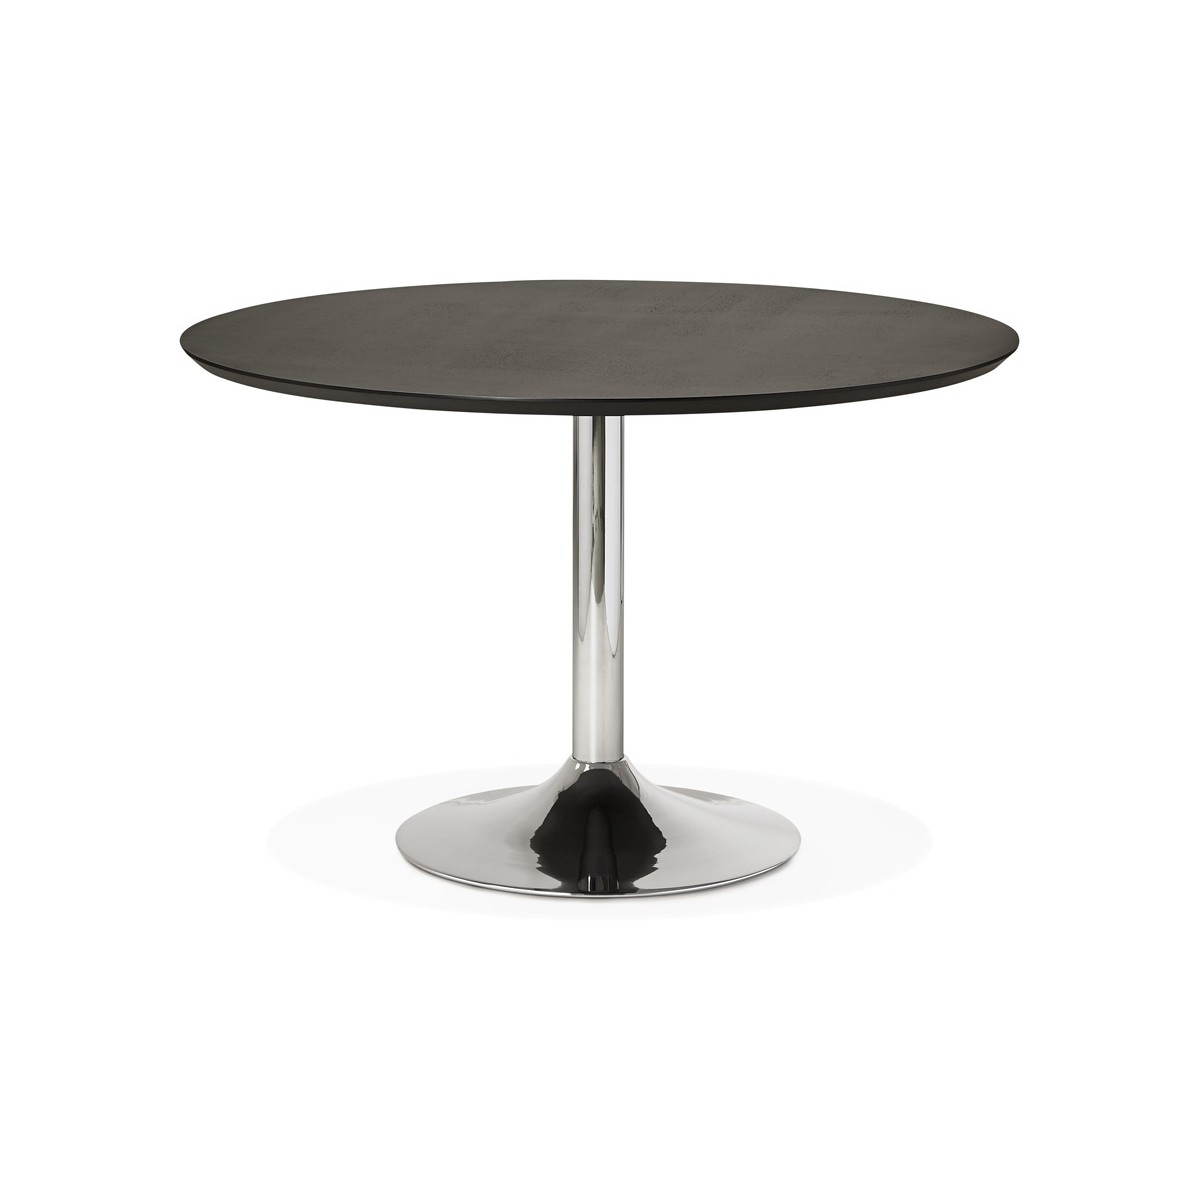 Tables design au meilleur prix, Table ronde de repas design TULIPE laquée  blanc 120 cm.